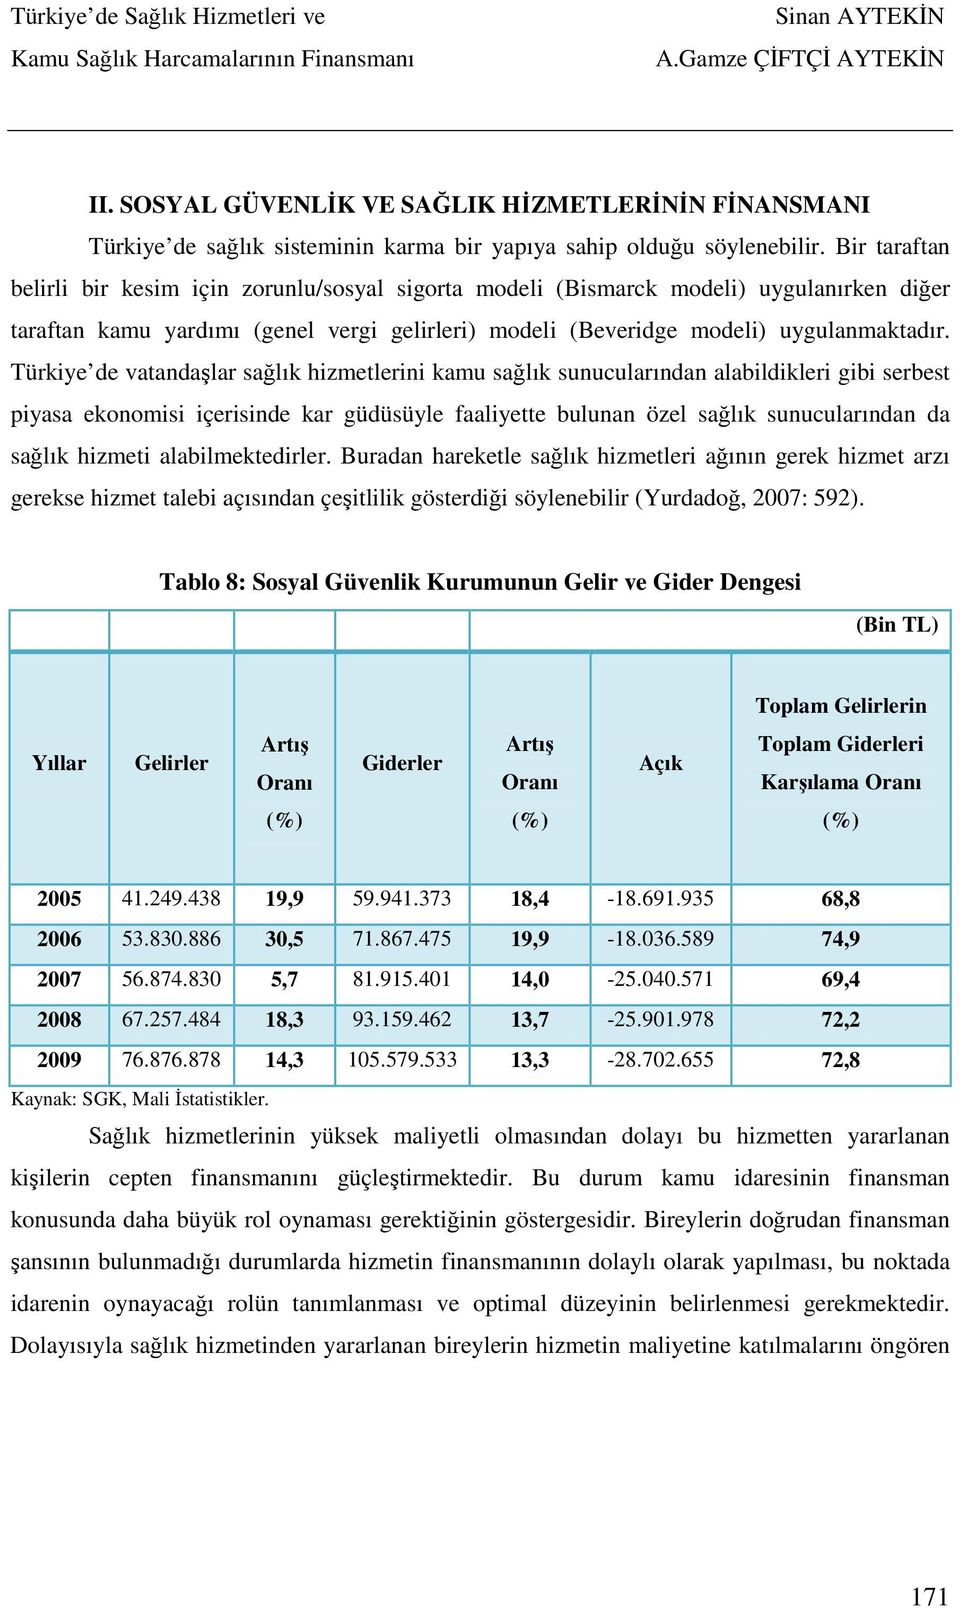 Türkiye de vatandaşlar sağlık hizmetlerini kamu sağlık sunucularından alabildikleri gibi serbest piyasa ekonomisi içerisinde kar güdüsüyle faaliyette bulunan özel sağlık sunucularından da sağlık